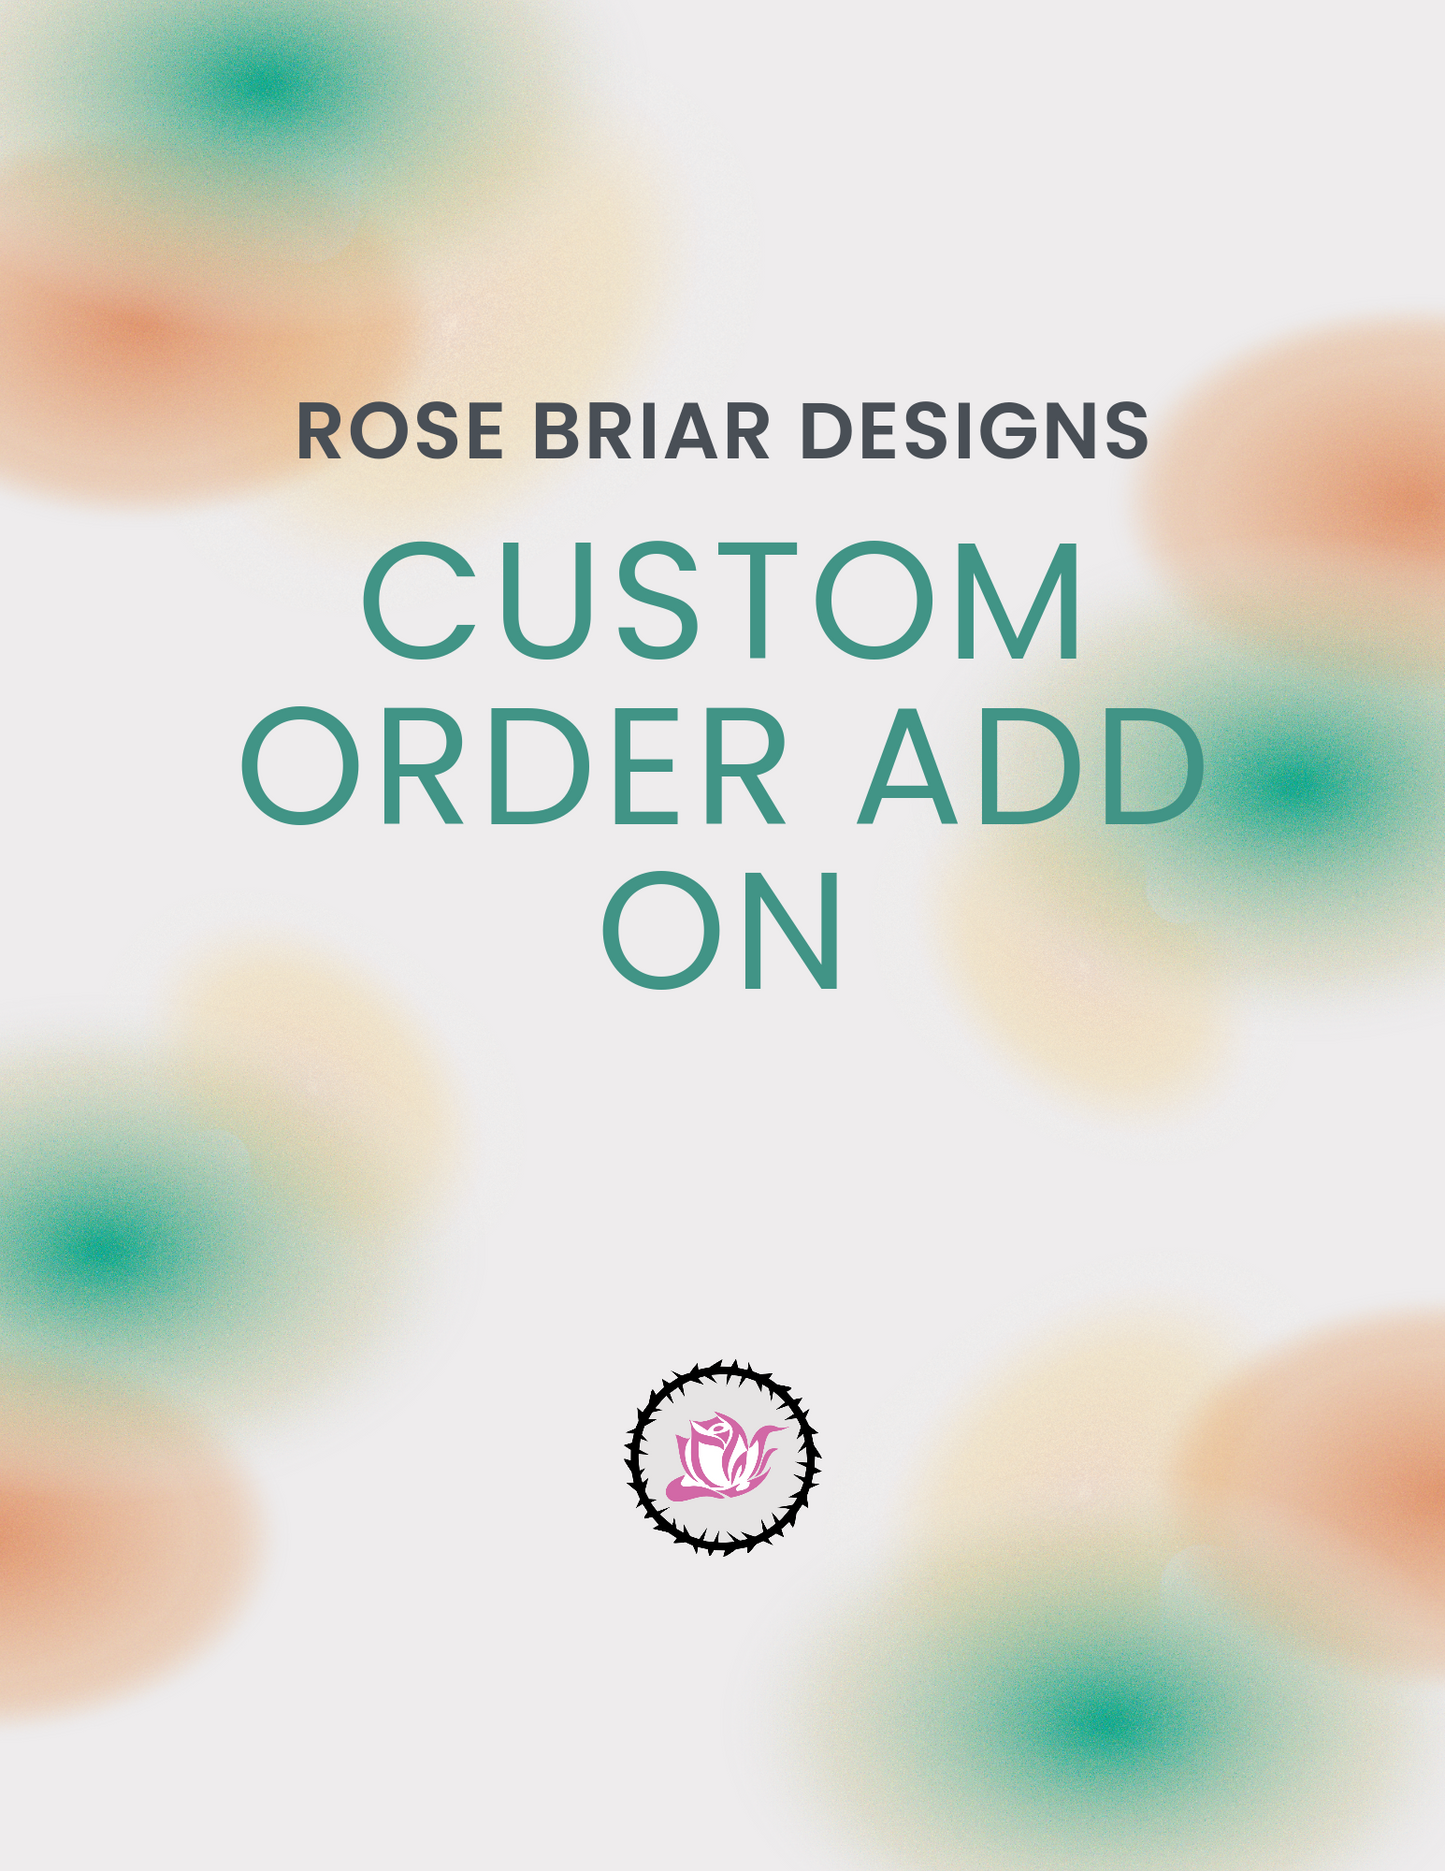 Create your own custom